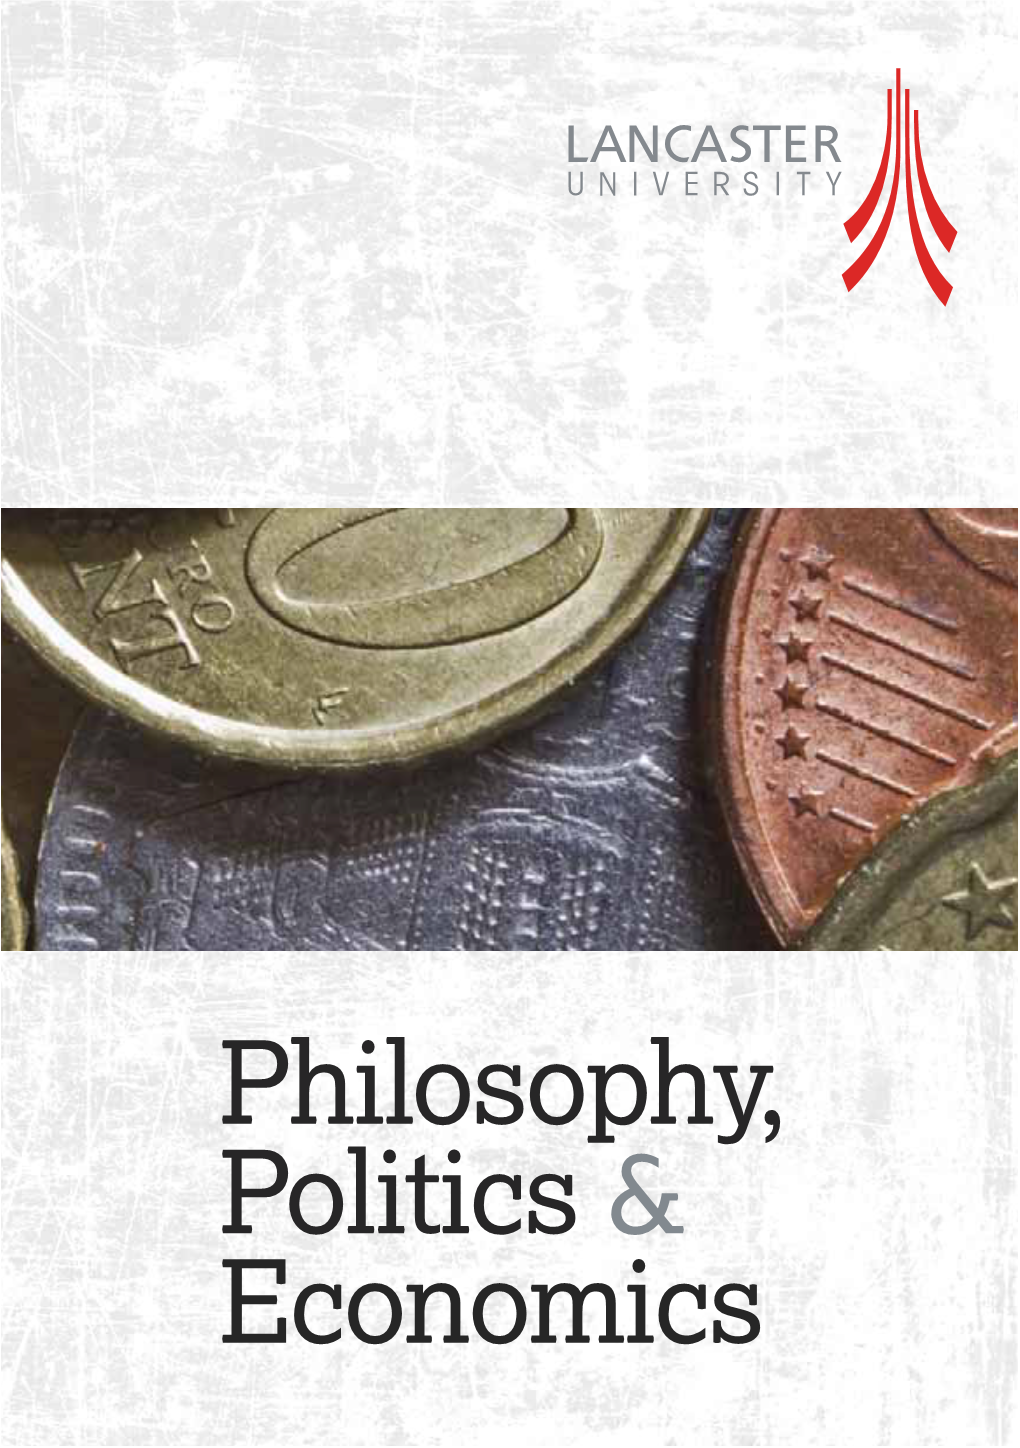 Philosophy, Politics & Economics